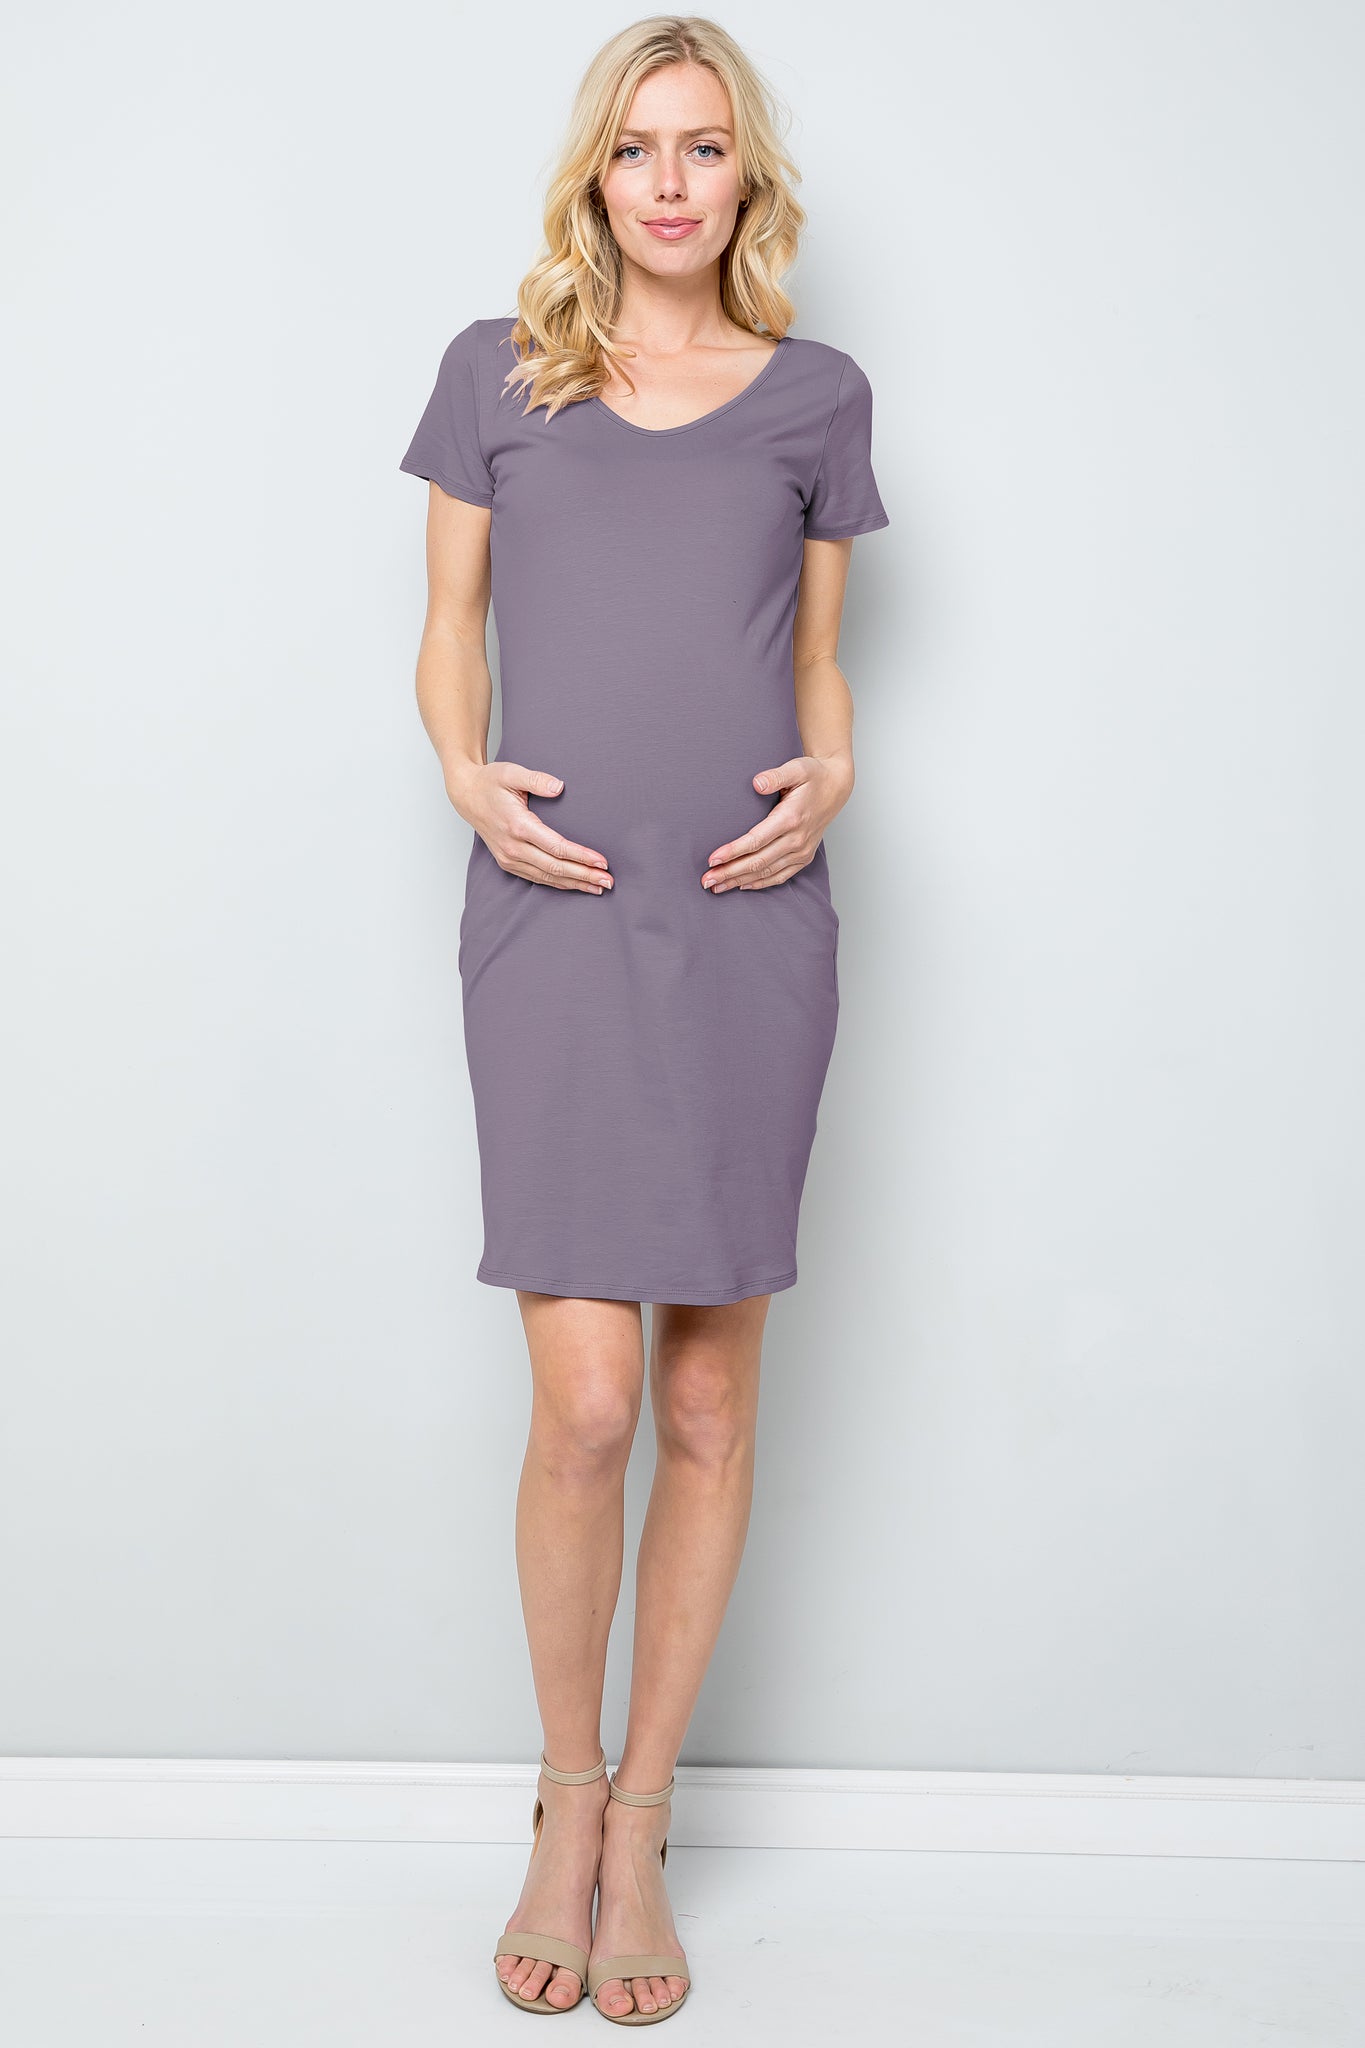 maternity pregnancy baby shower short cap sleeve v neck above knee summer basic shirt dress